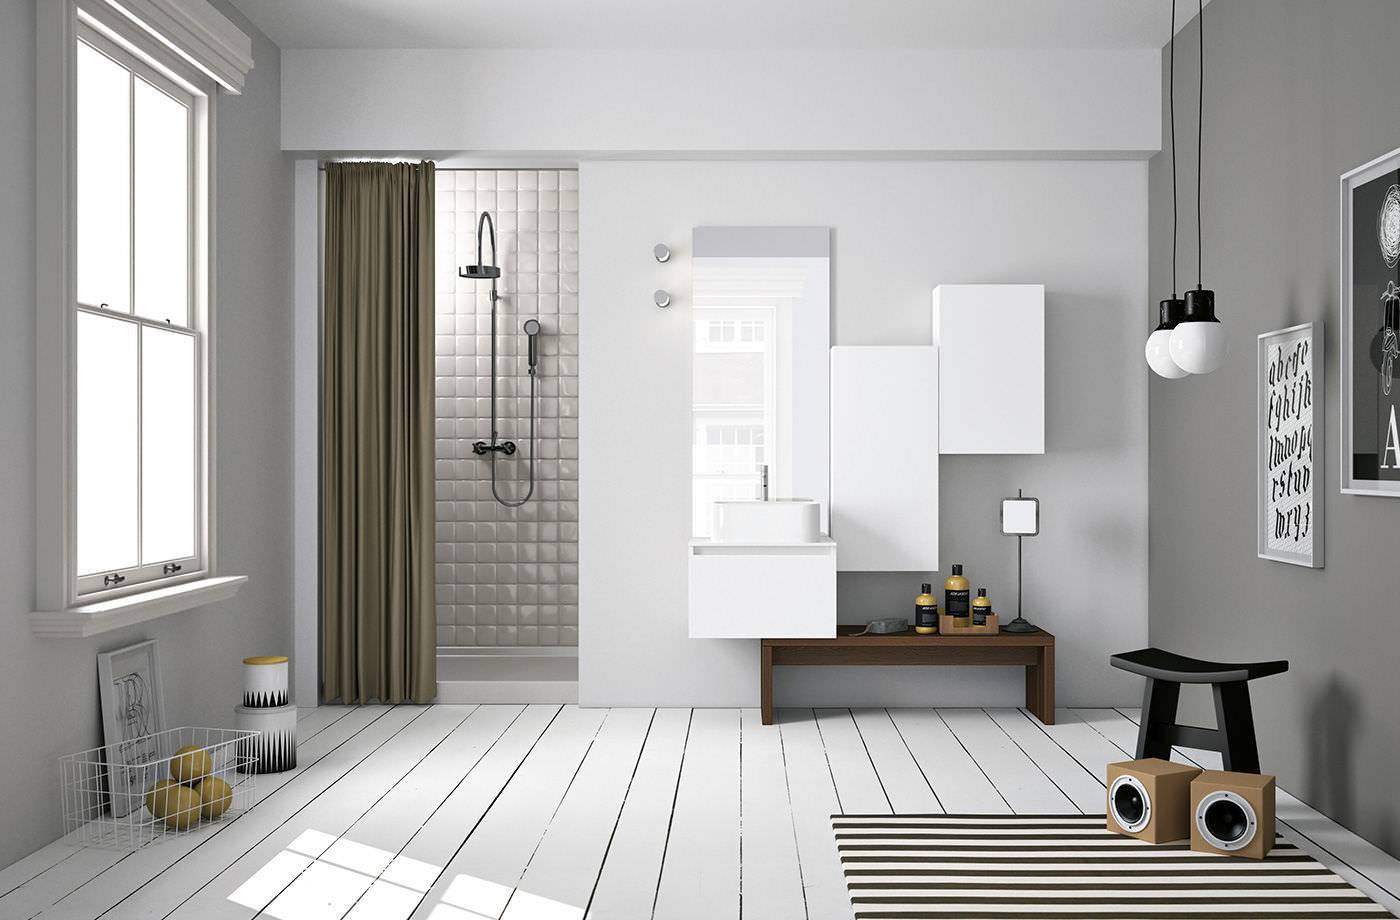 Скандинавский стиль в интерьере квартиры: фото идеи разных комнат